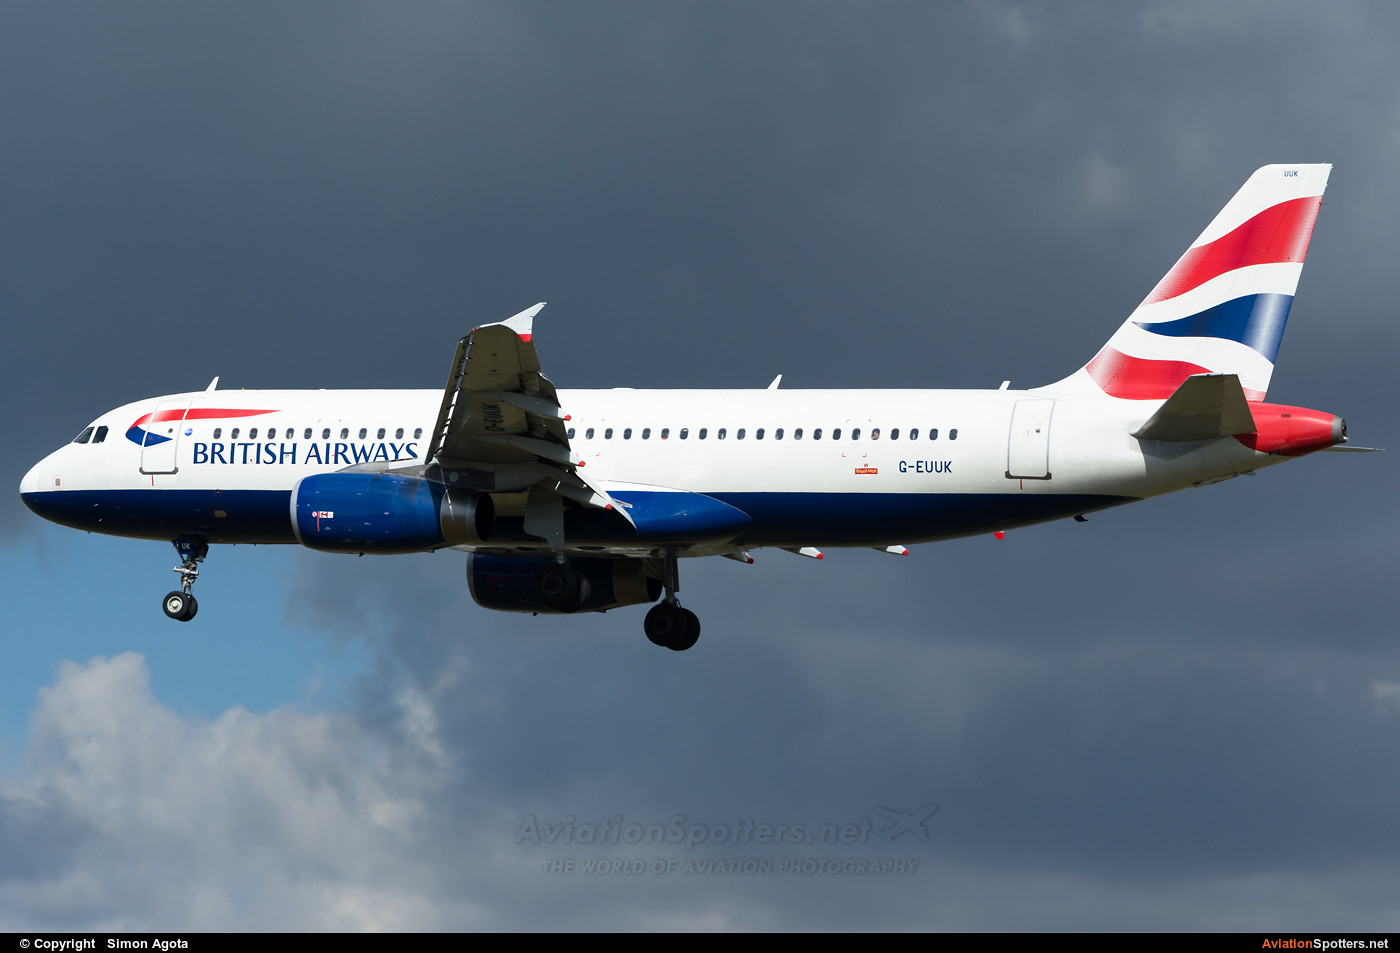 British Airways  -  A320  (G-EUUK) By Simon Agota (goti80)